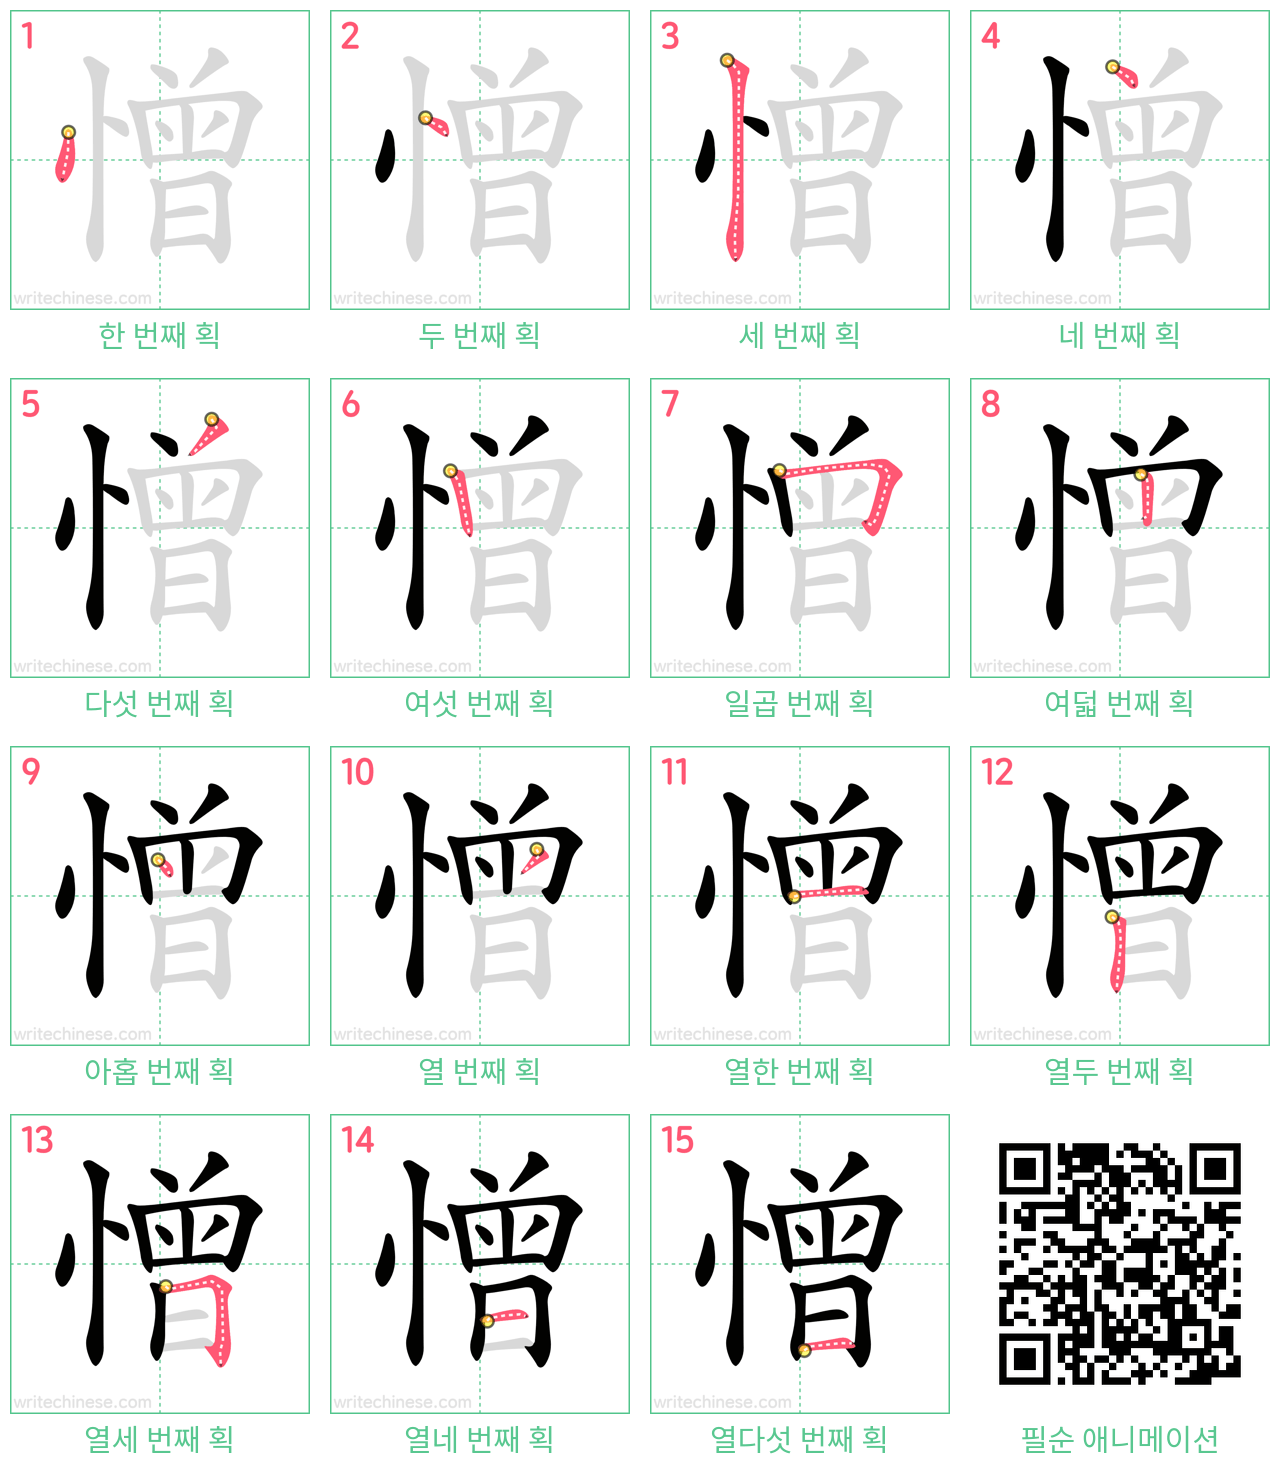 憎 step-by-step stroke order diagrams